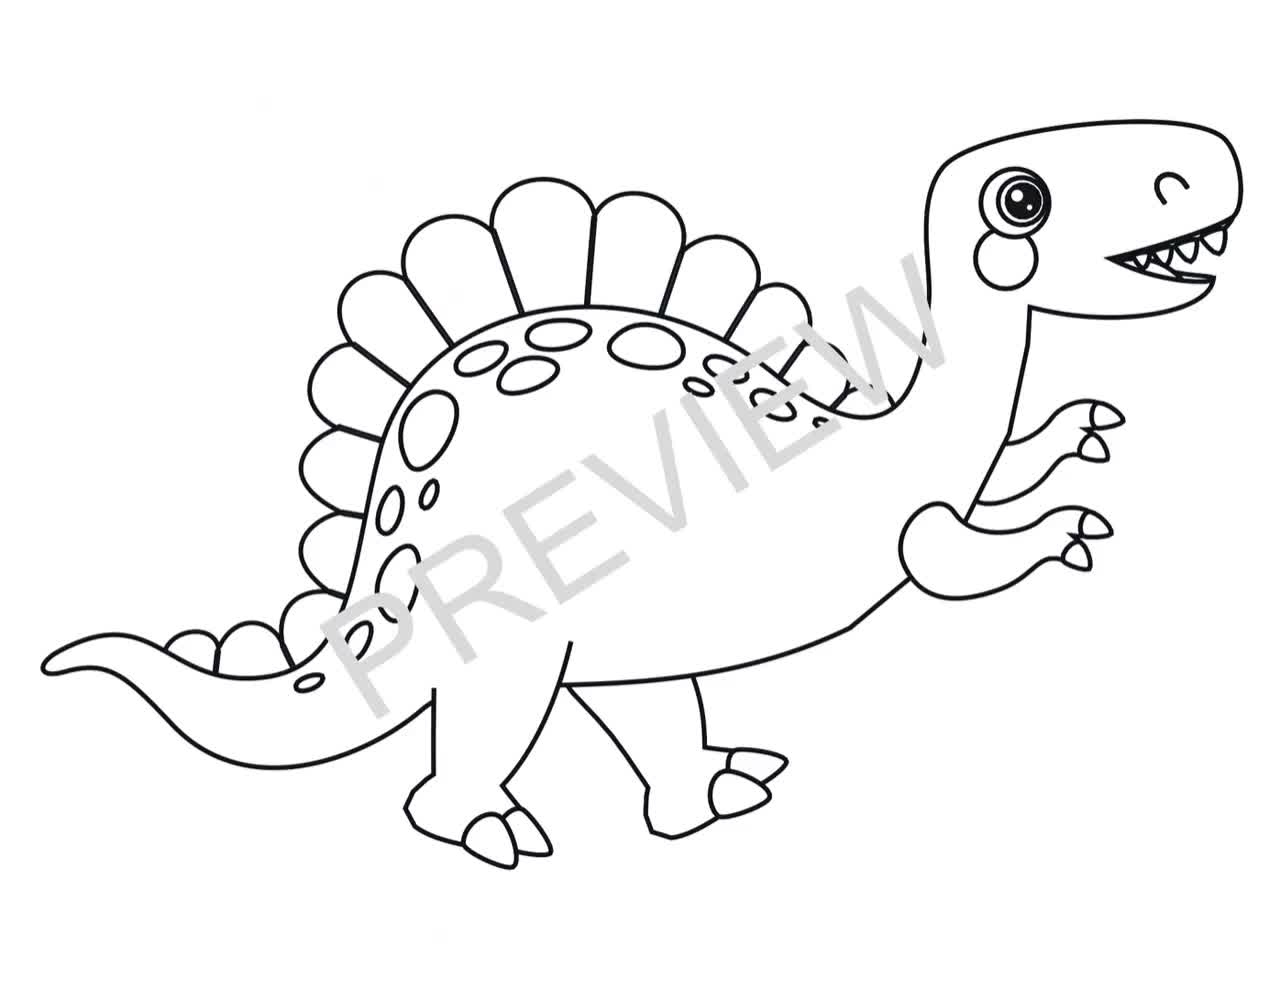 Libro para colorear de dinosaurios para niños : Divertido y gran libro para  colorear de dinosaurios para niños, niñas, niños pequeños y preescolares  (Paperback) 